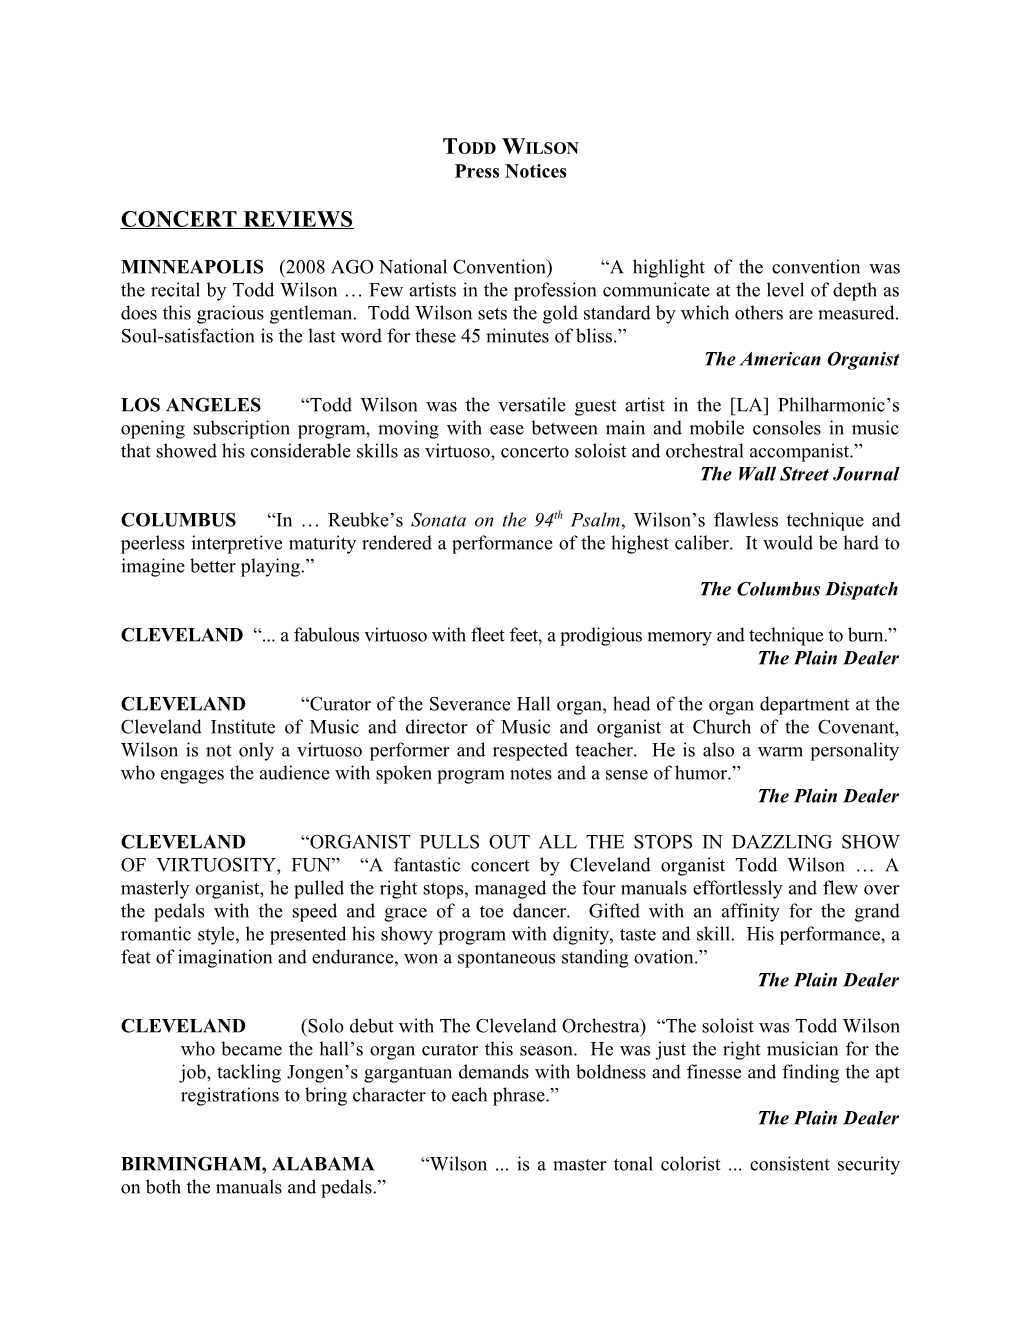 Press Notices, Page 1